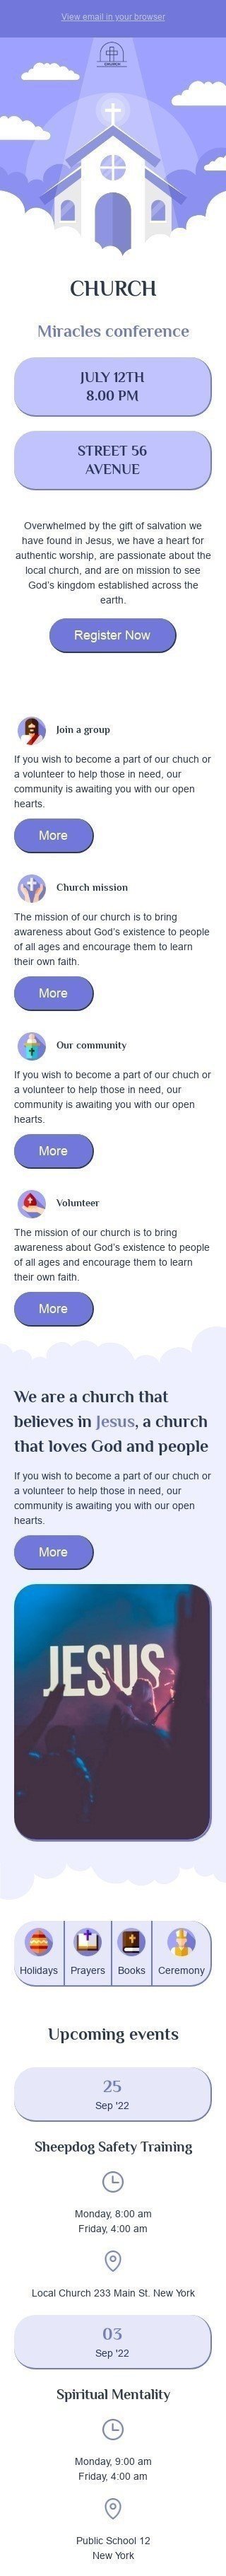 Modello Email Promo «Conferenza sui miracoli» per il settore industriale di Chiesa Visualizzazione mobile